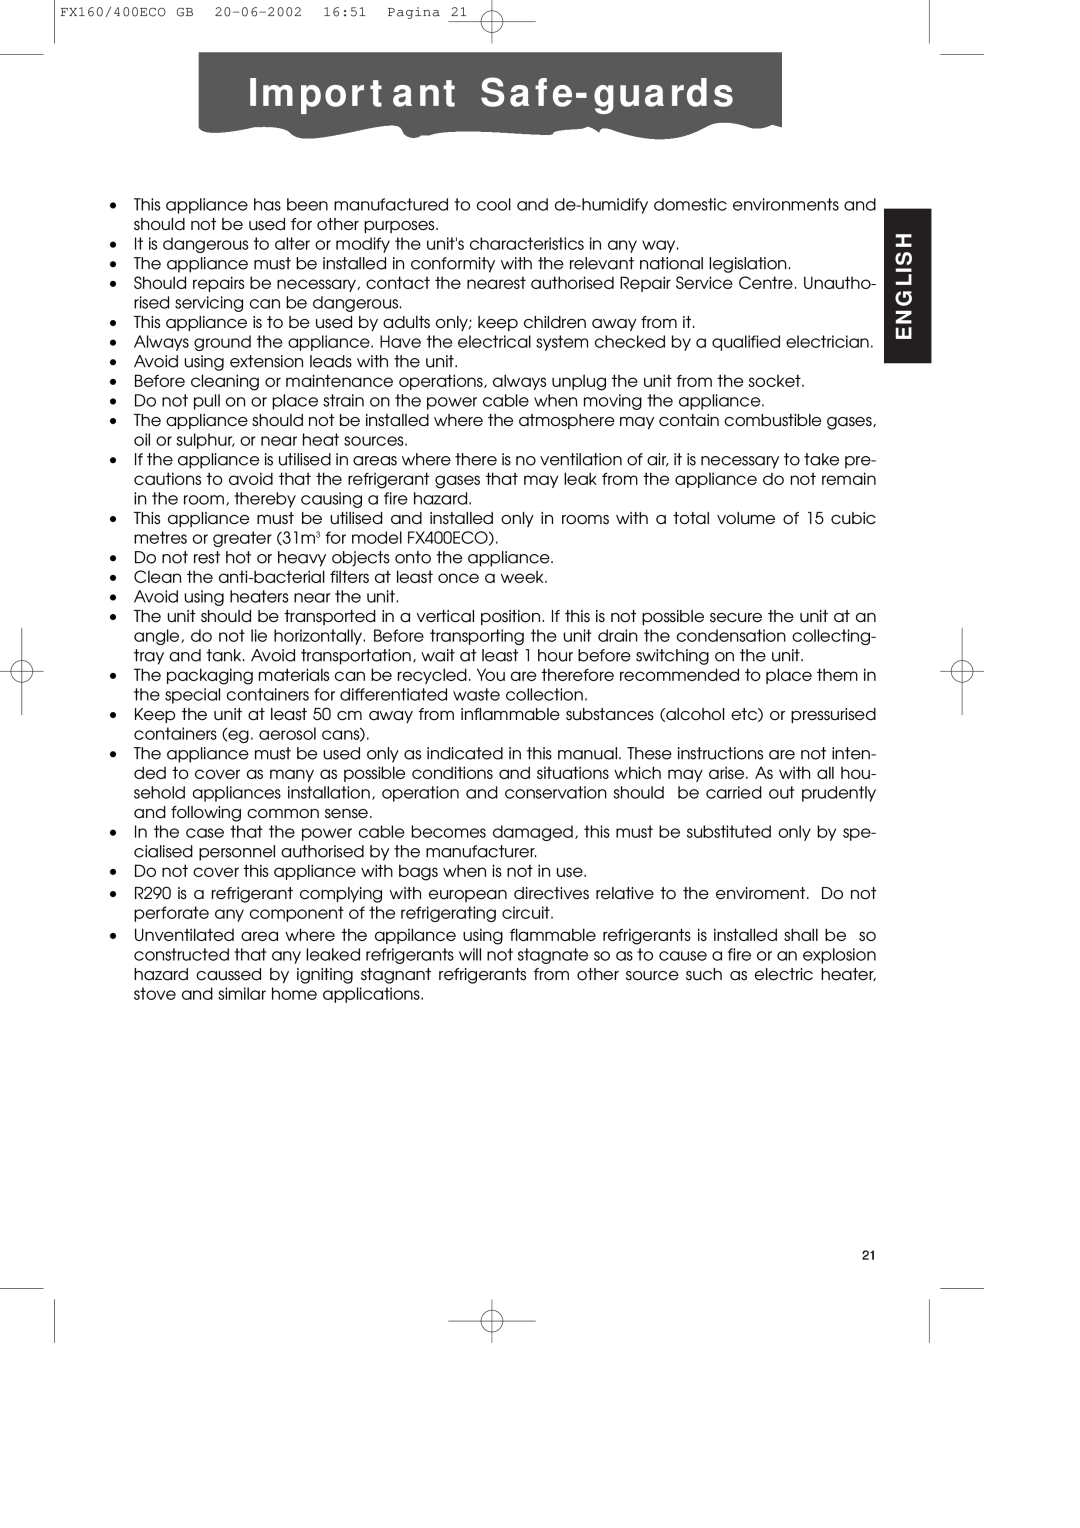 DeLonghi FX400ECO manual Important Safe-guards, English 